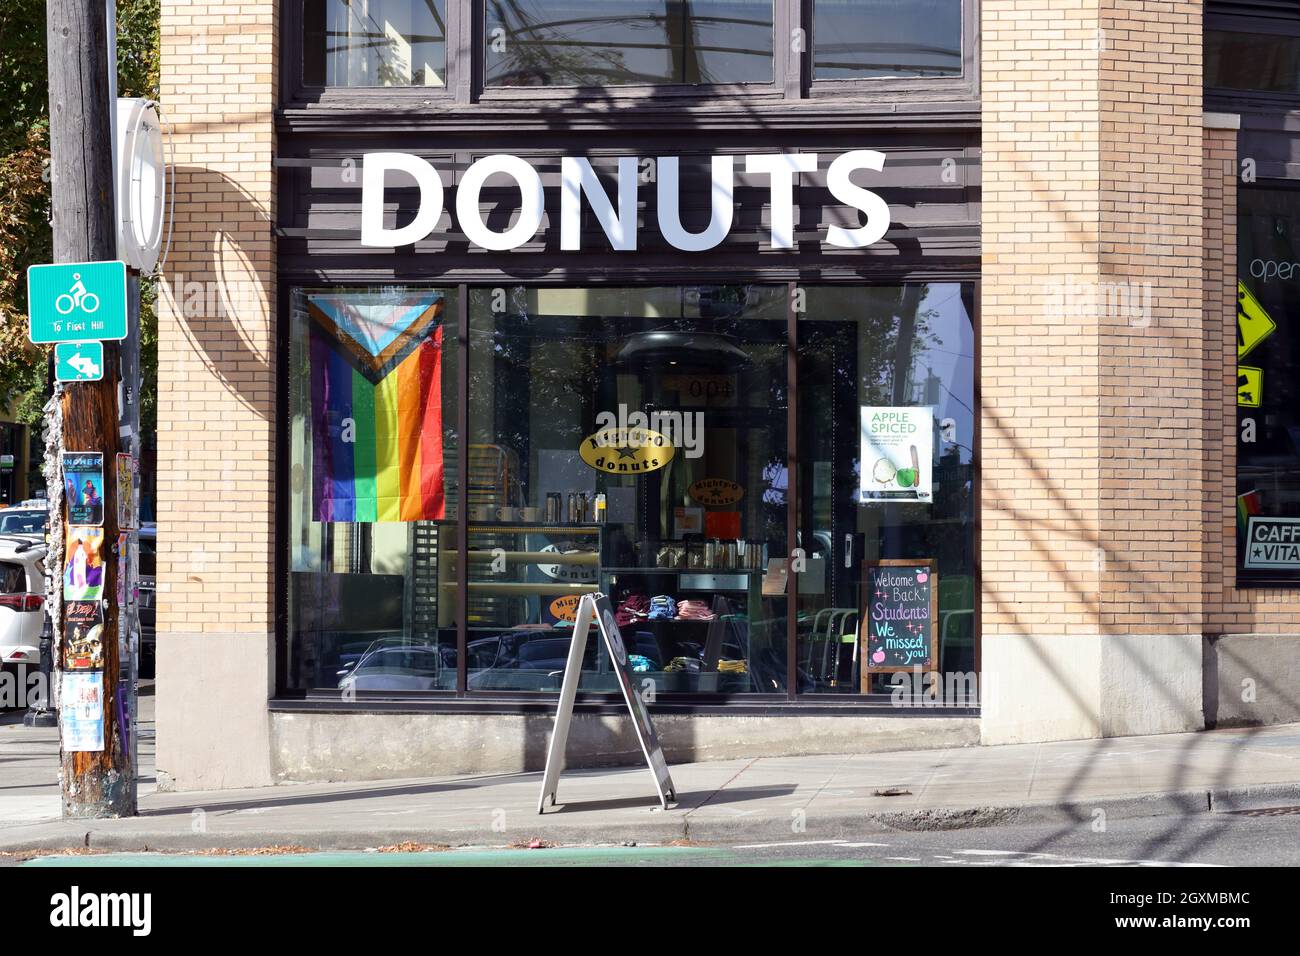 Mighty-O Donuts, 1400 12th Ave, Seattle foto del escaparate de una tienda de donuts orgánicos en el barrio de Capitol Hill, estado de washington Foto de stock